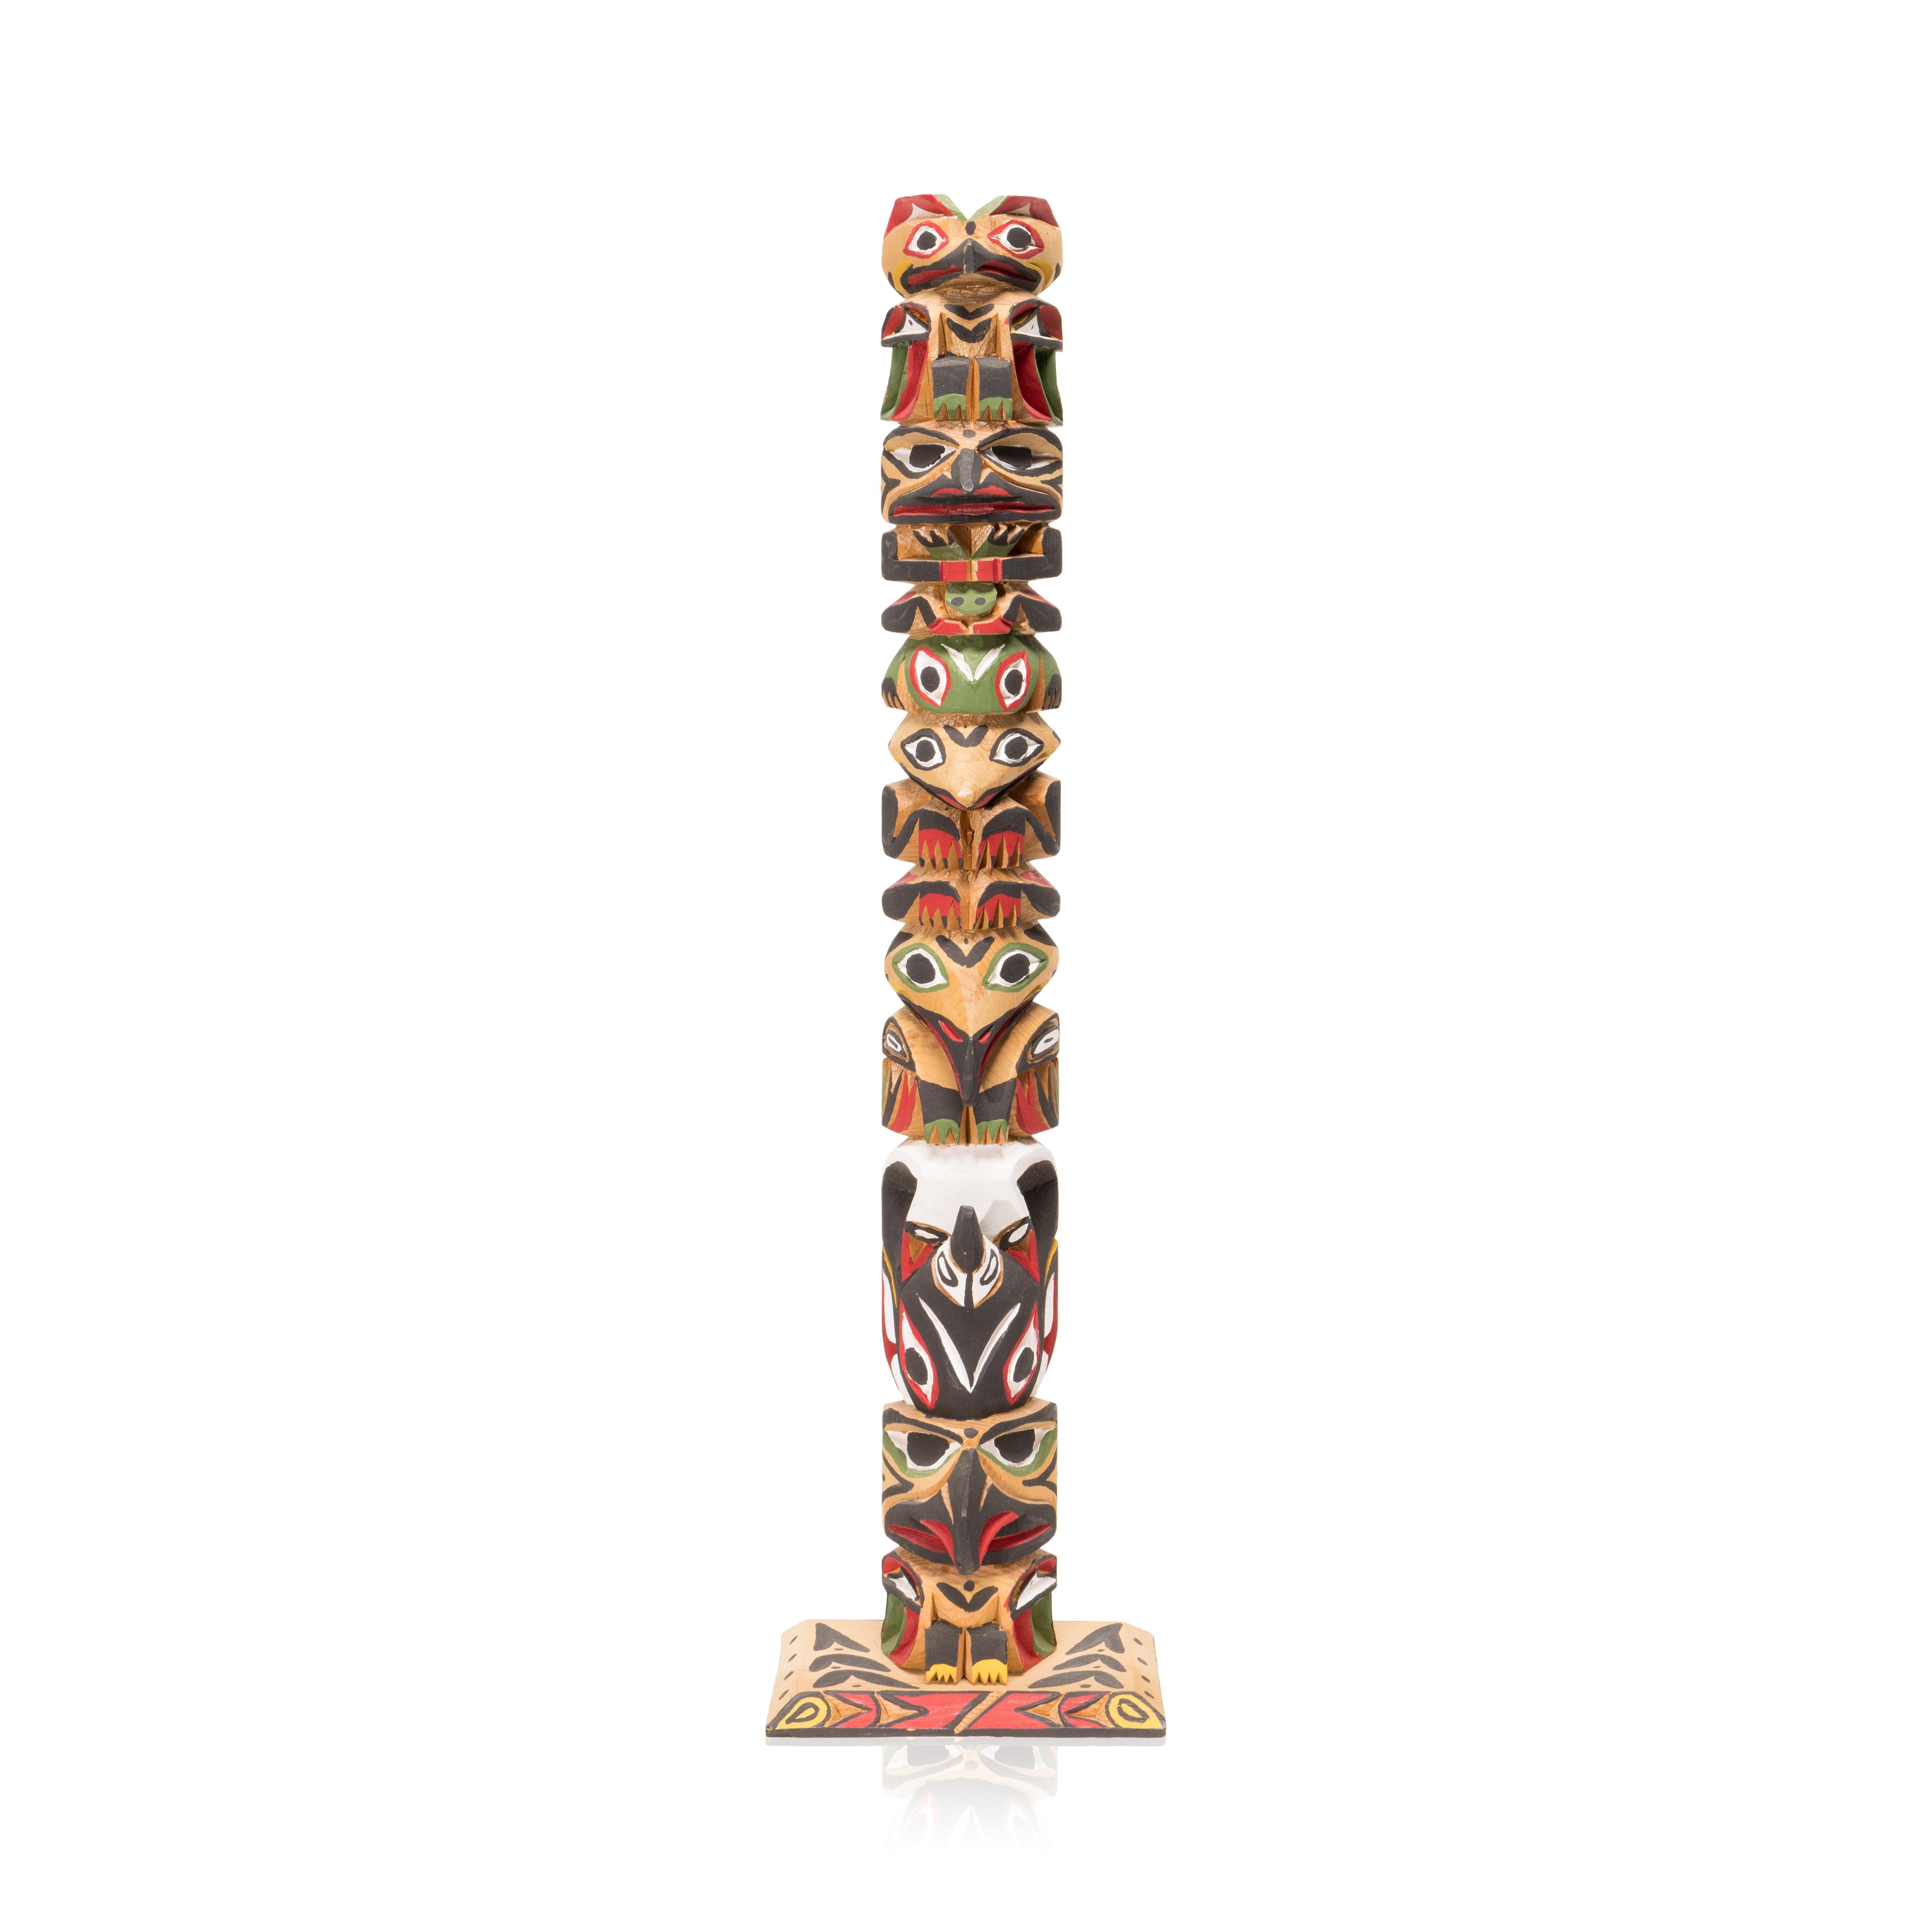 (1933-1988) Ce totem en bois finement ouvragé est l'œuvre du maître sculpteur Ditidaht/Nuu-Chah-Nulth Raymond Williams, le père de la génération actuelle de sculpteurs William. Le totem sculpté présente un aigle, une grenouille et un orque. Signé au